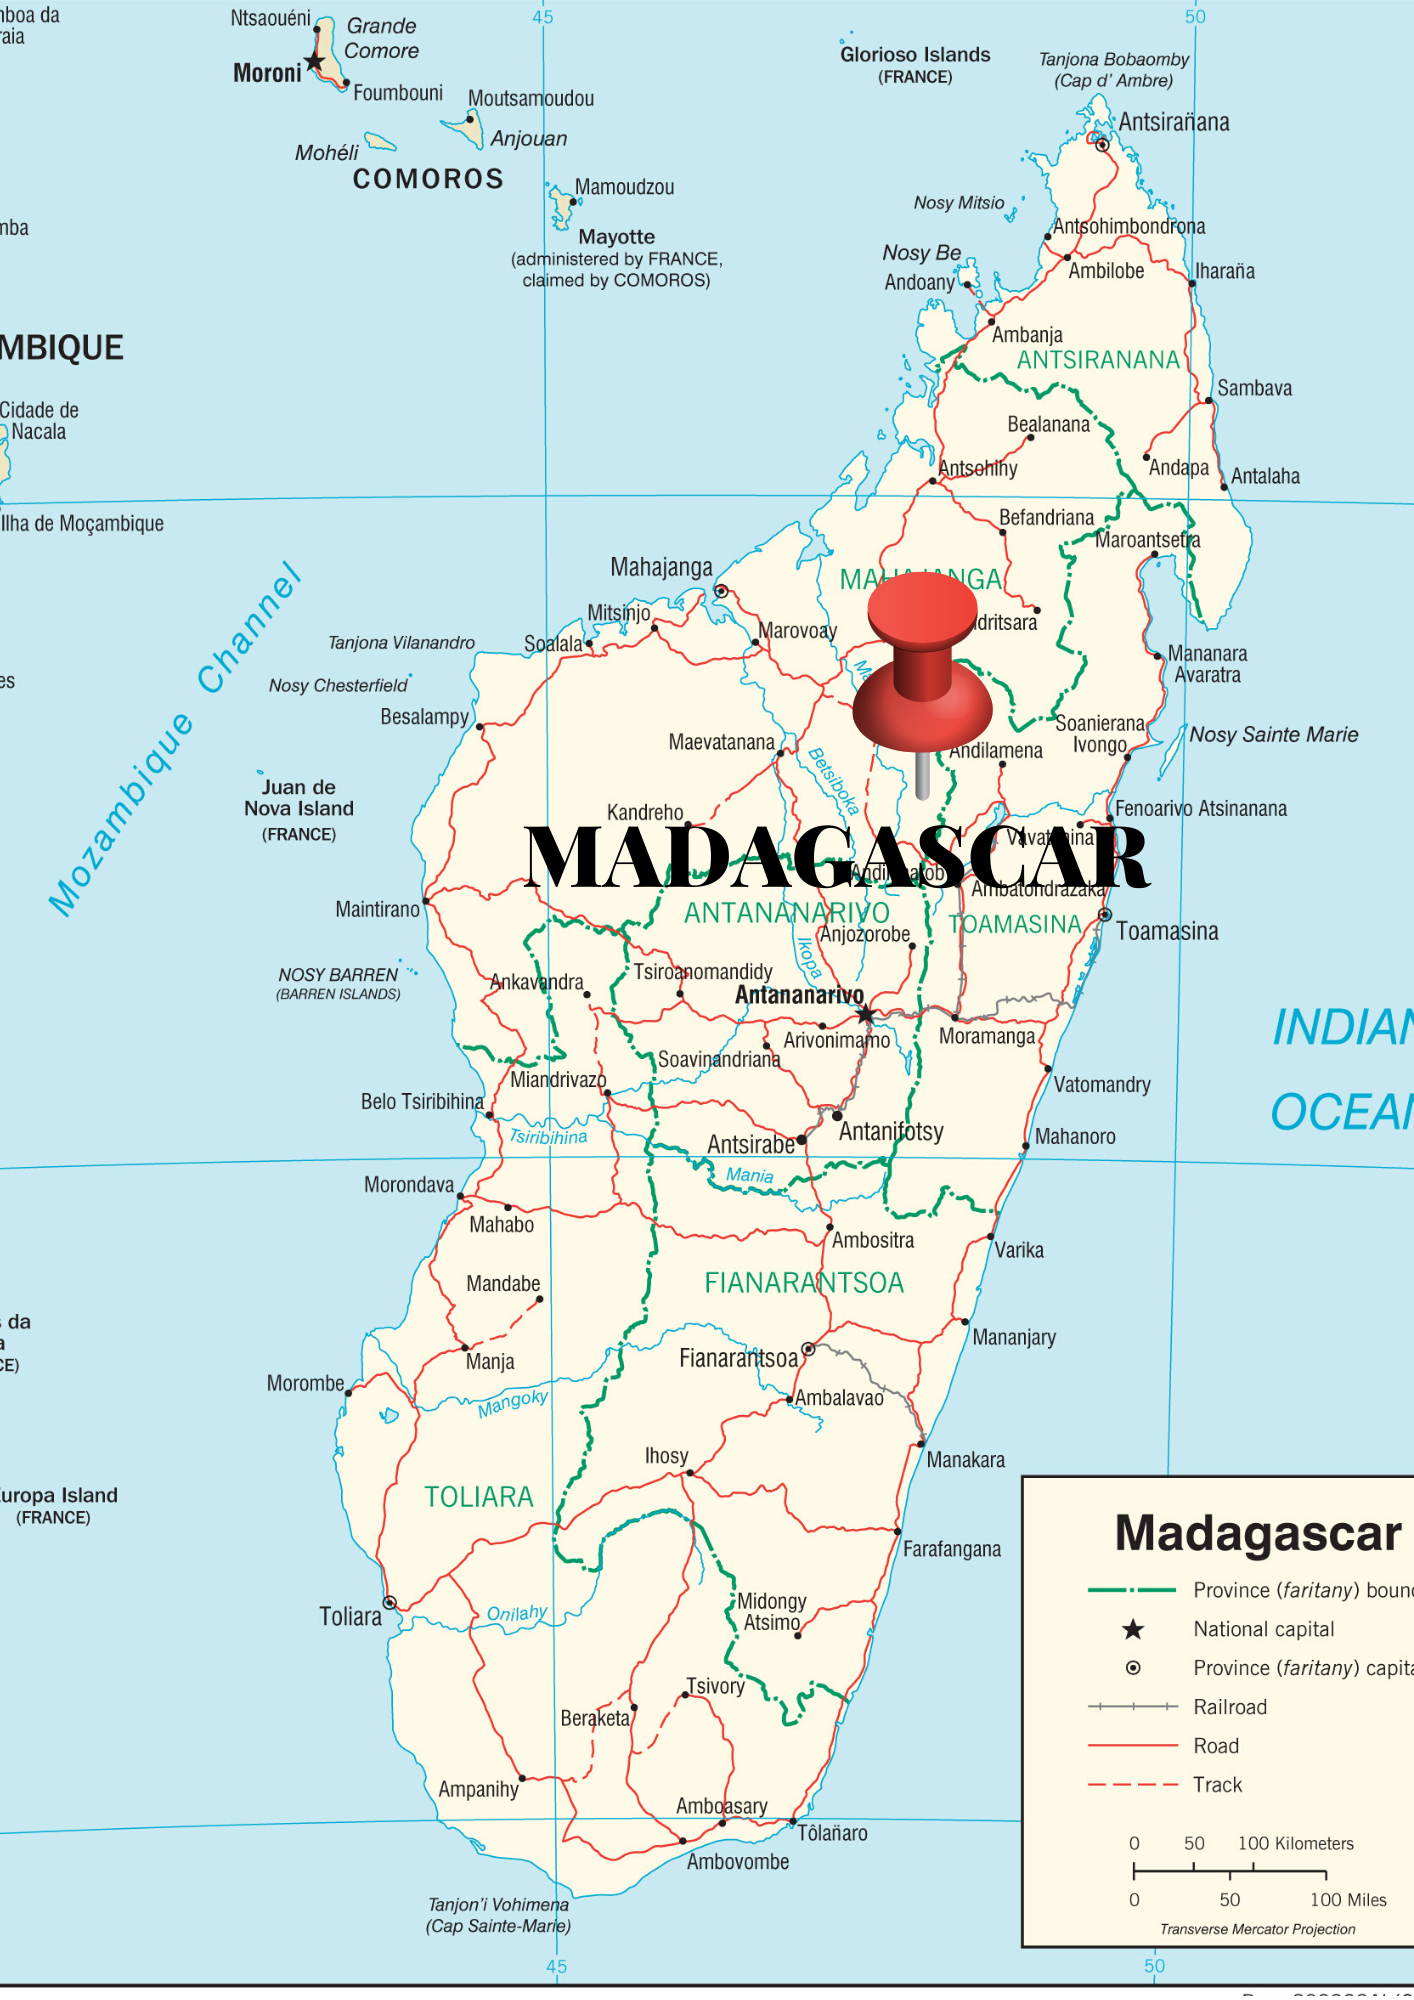 madagascar_mapa-5.png